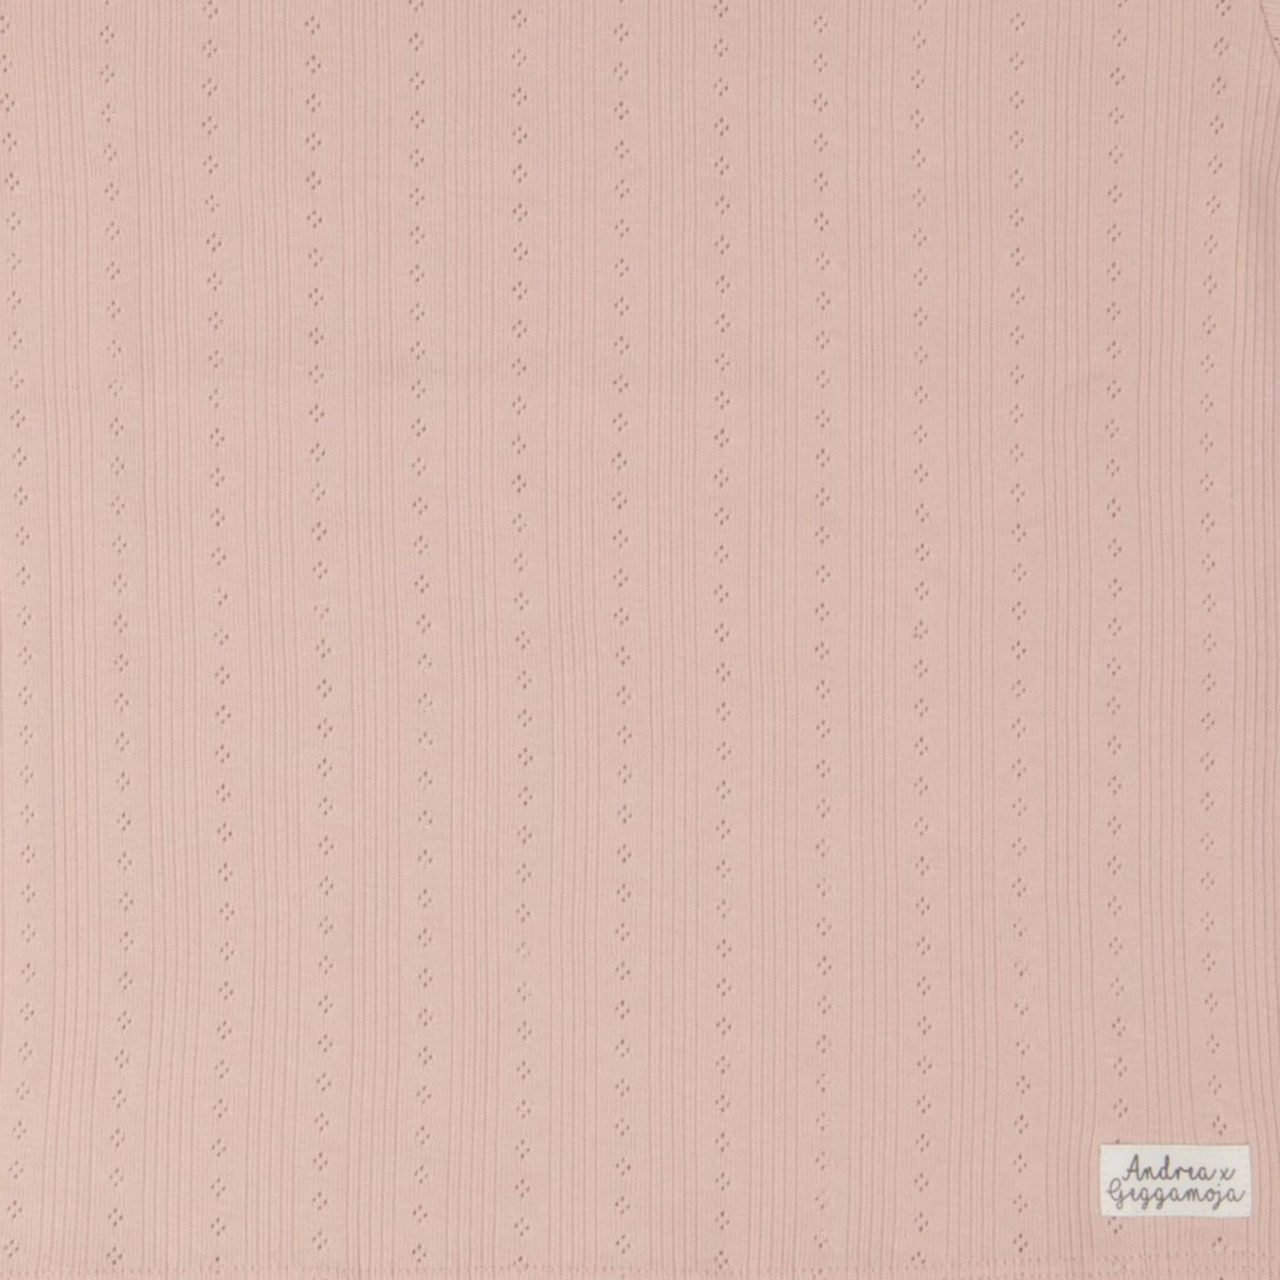 Klänning Pointelle Pink Rose 110/116